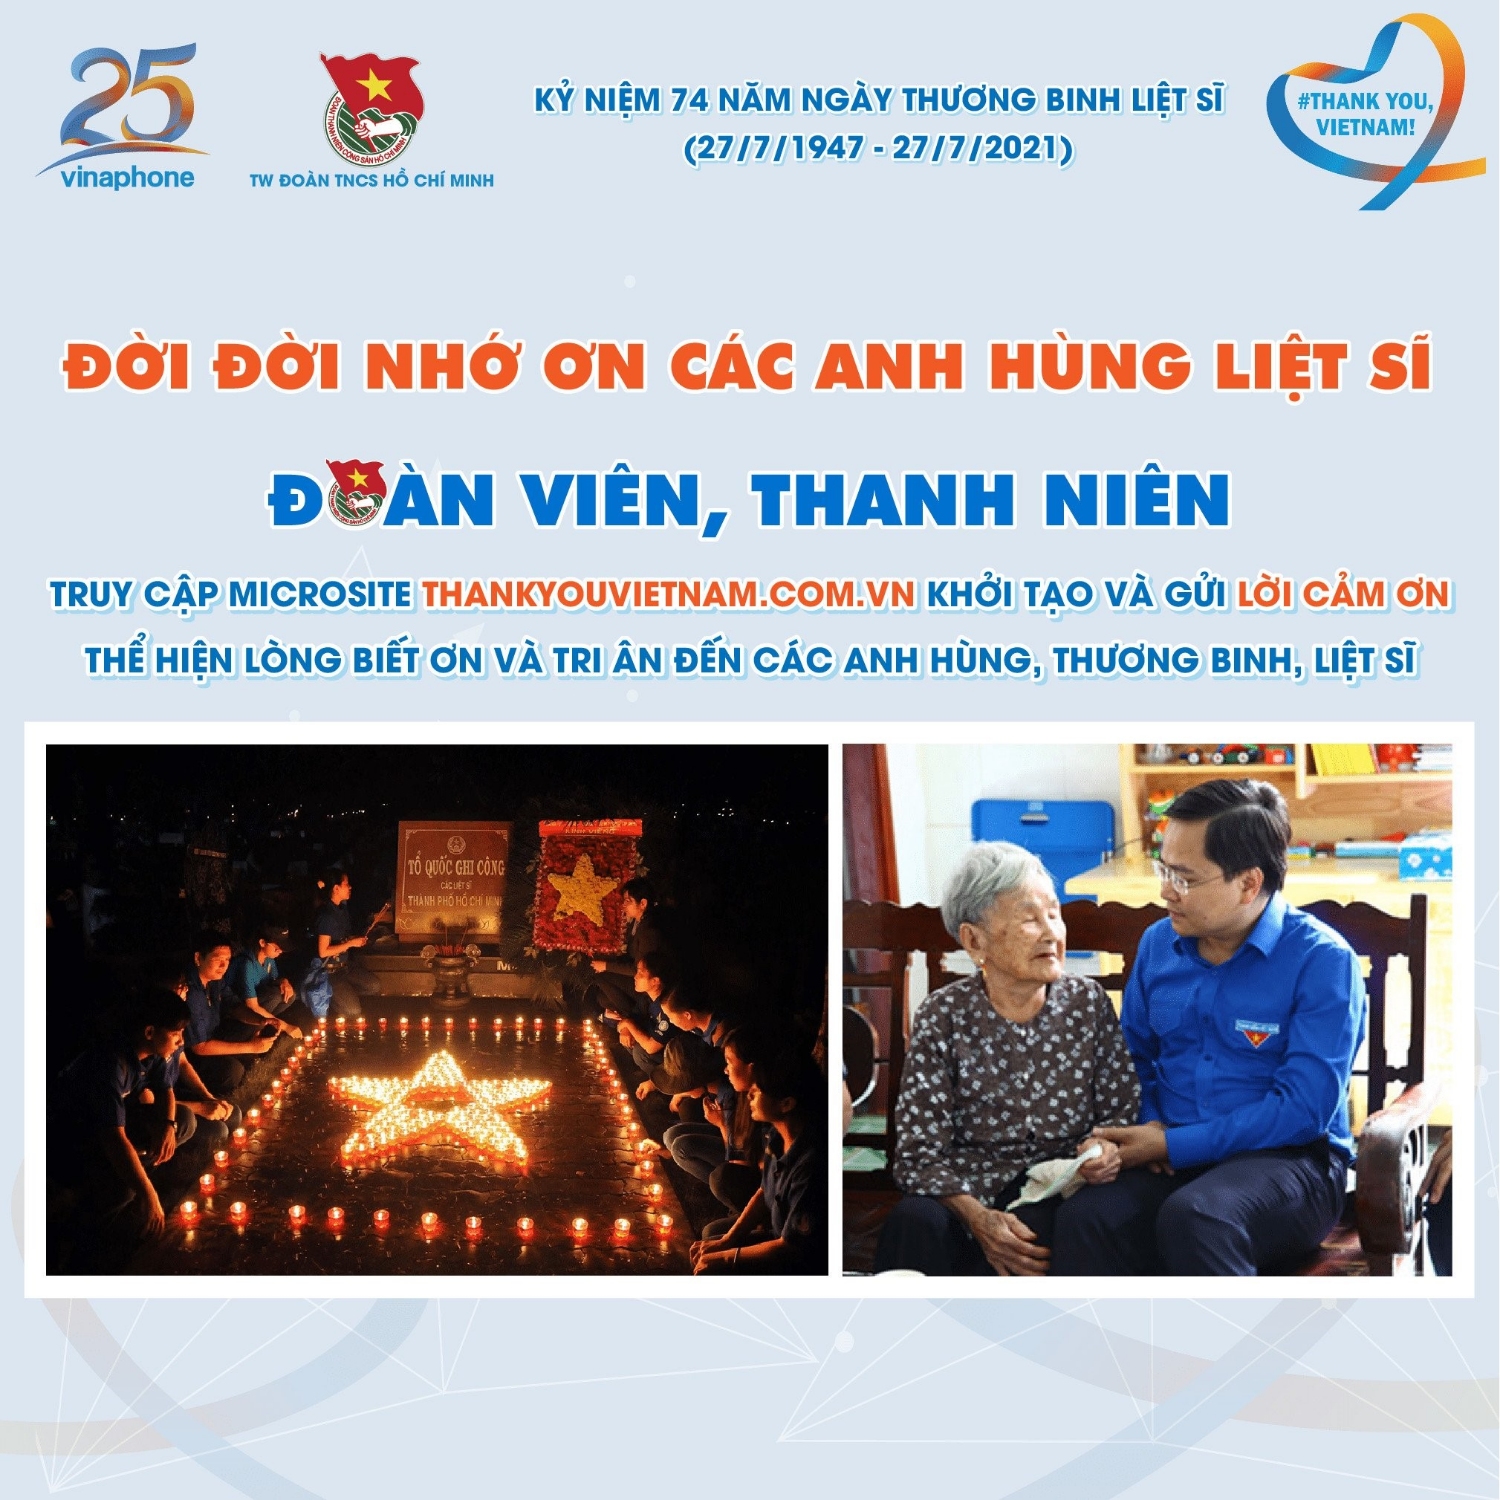 hgh#THANK YOU, VIETNAM! – KHỞI TẠO VÀ GỬI LỜI CẢM ƠN ĐẾN CÁC ANH HÙNG, THƯƠNG BINH, LIỆT SĨ